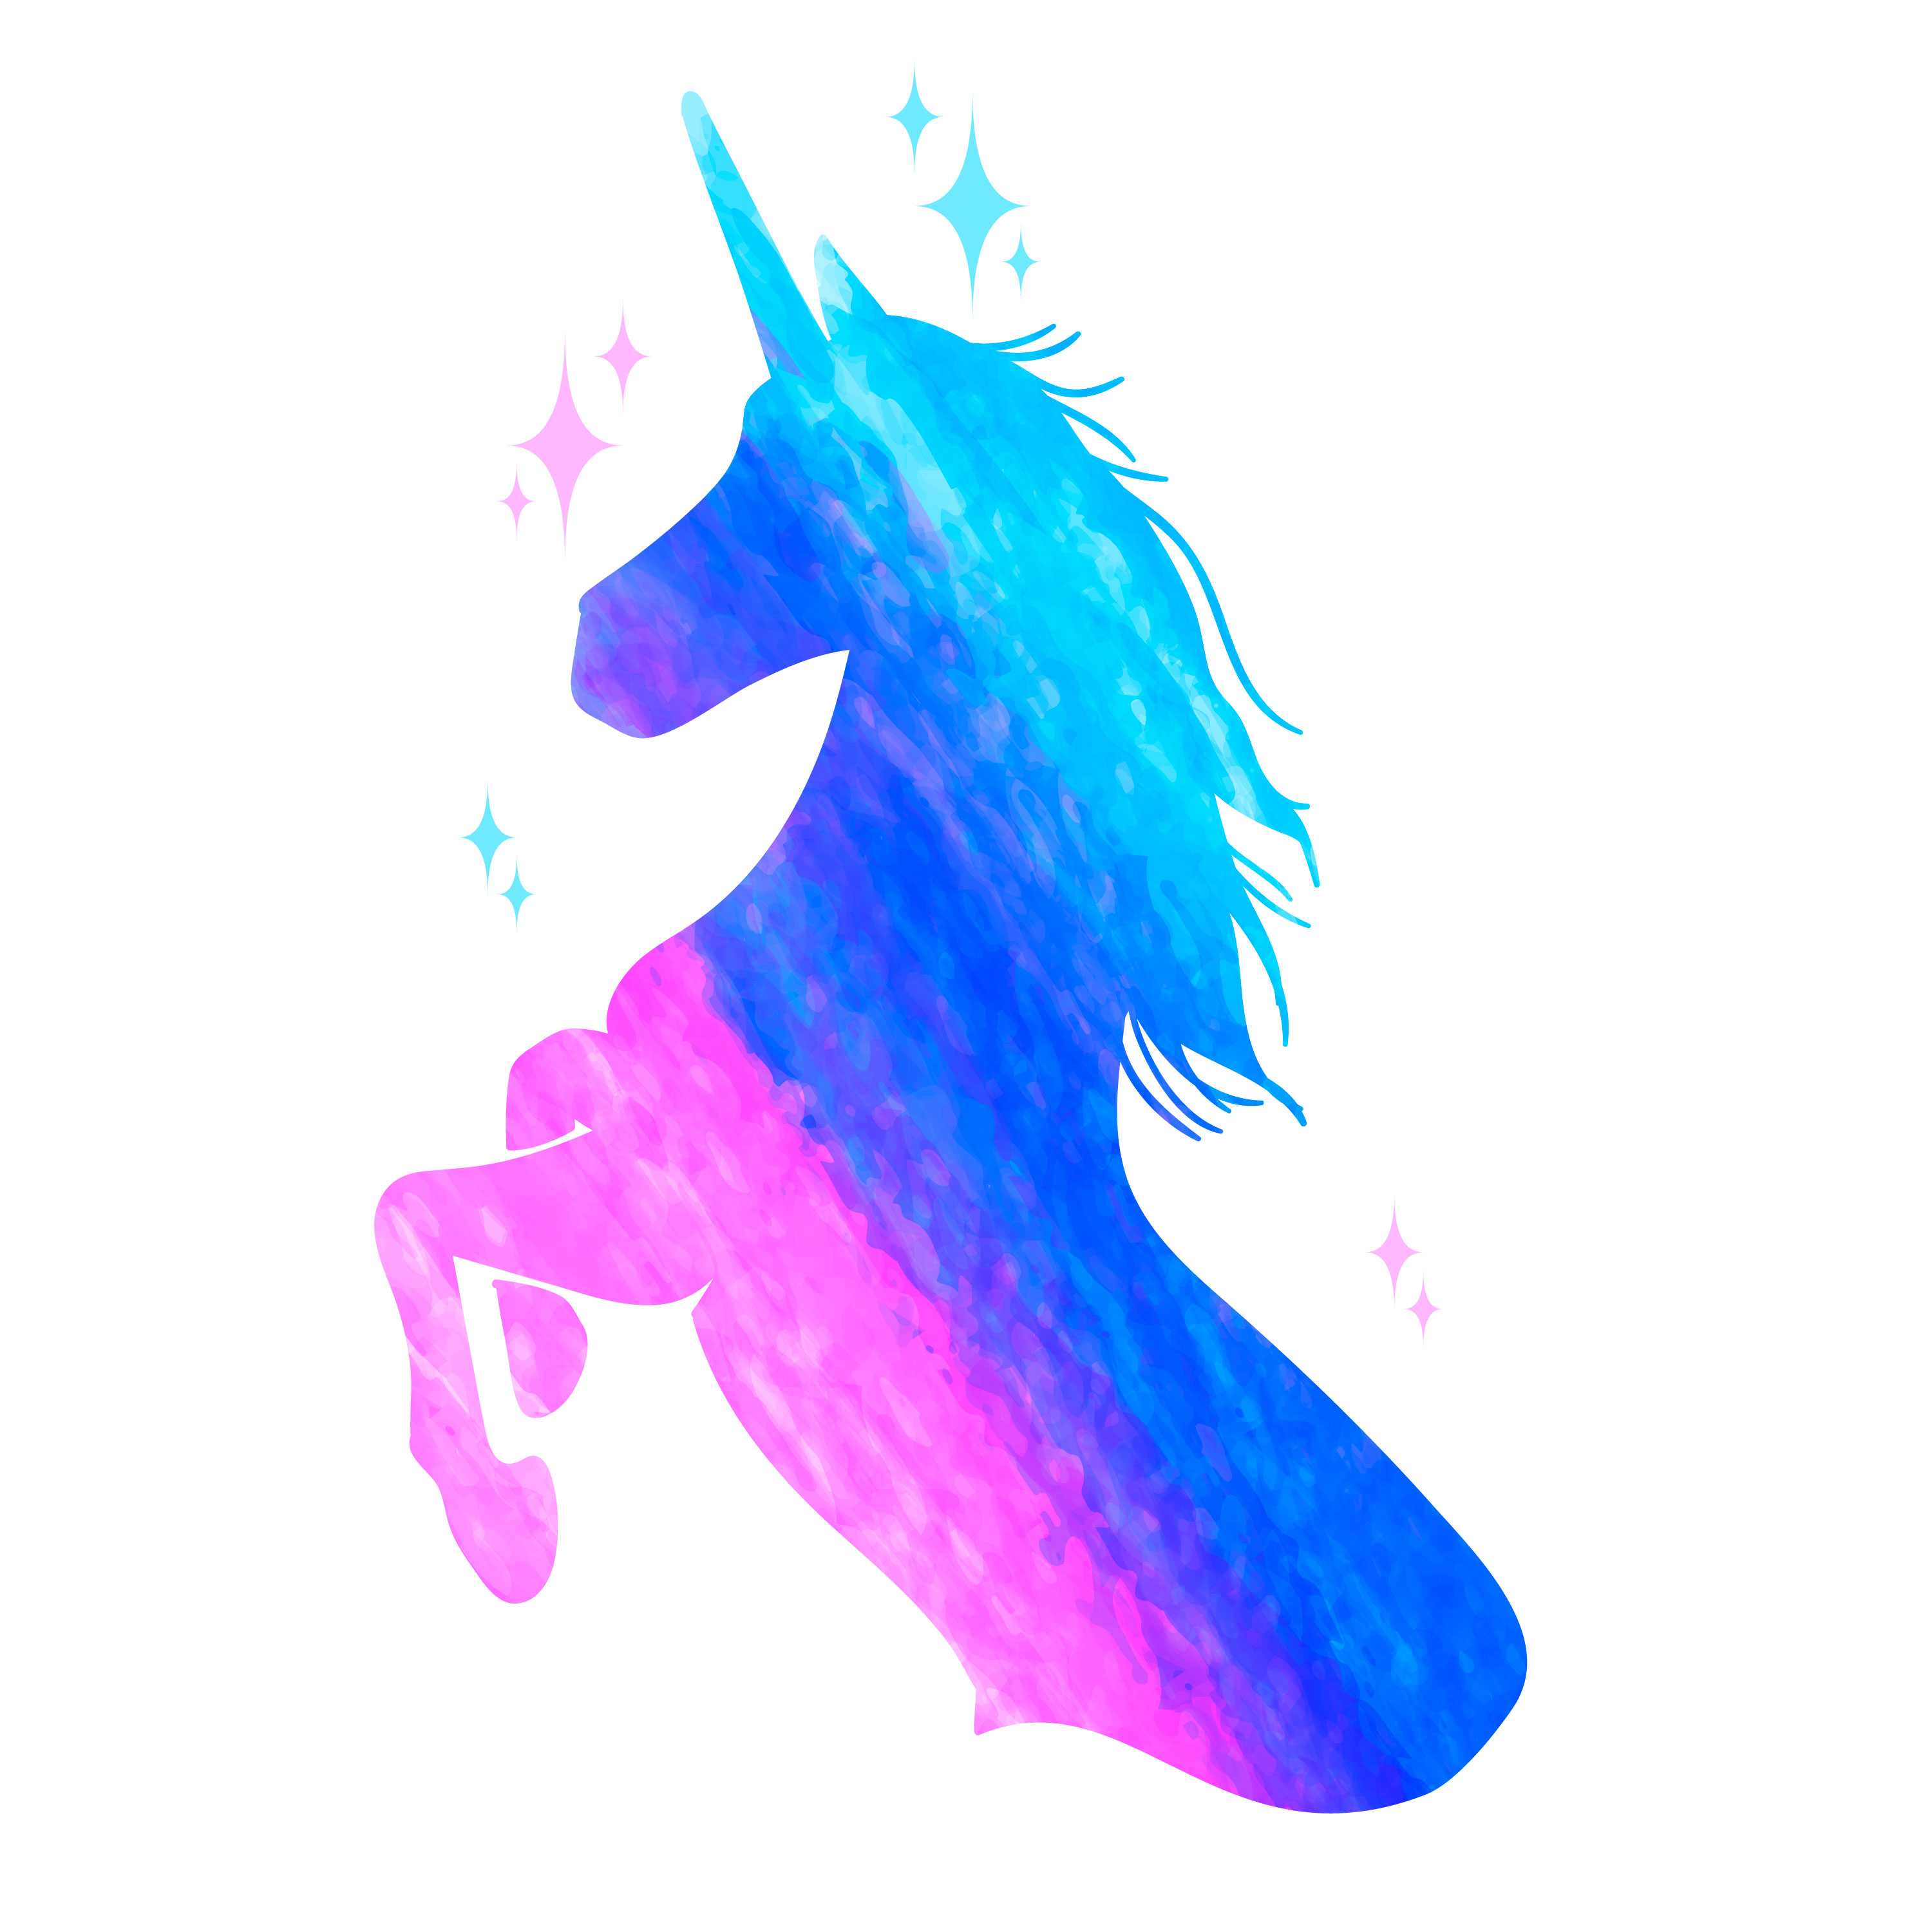 Mythology illustration set of unicorn silhouette, unicorn with